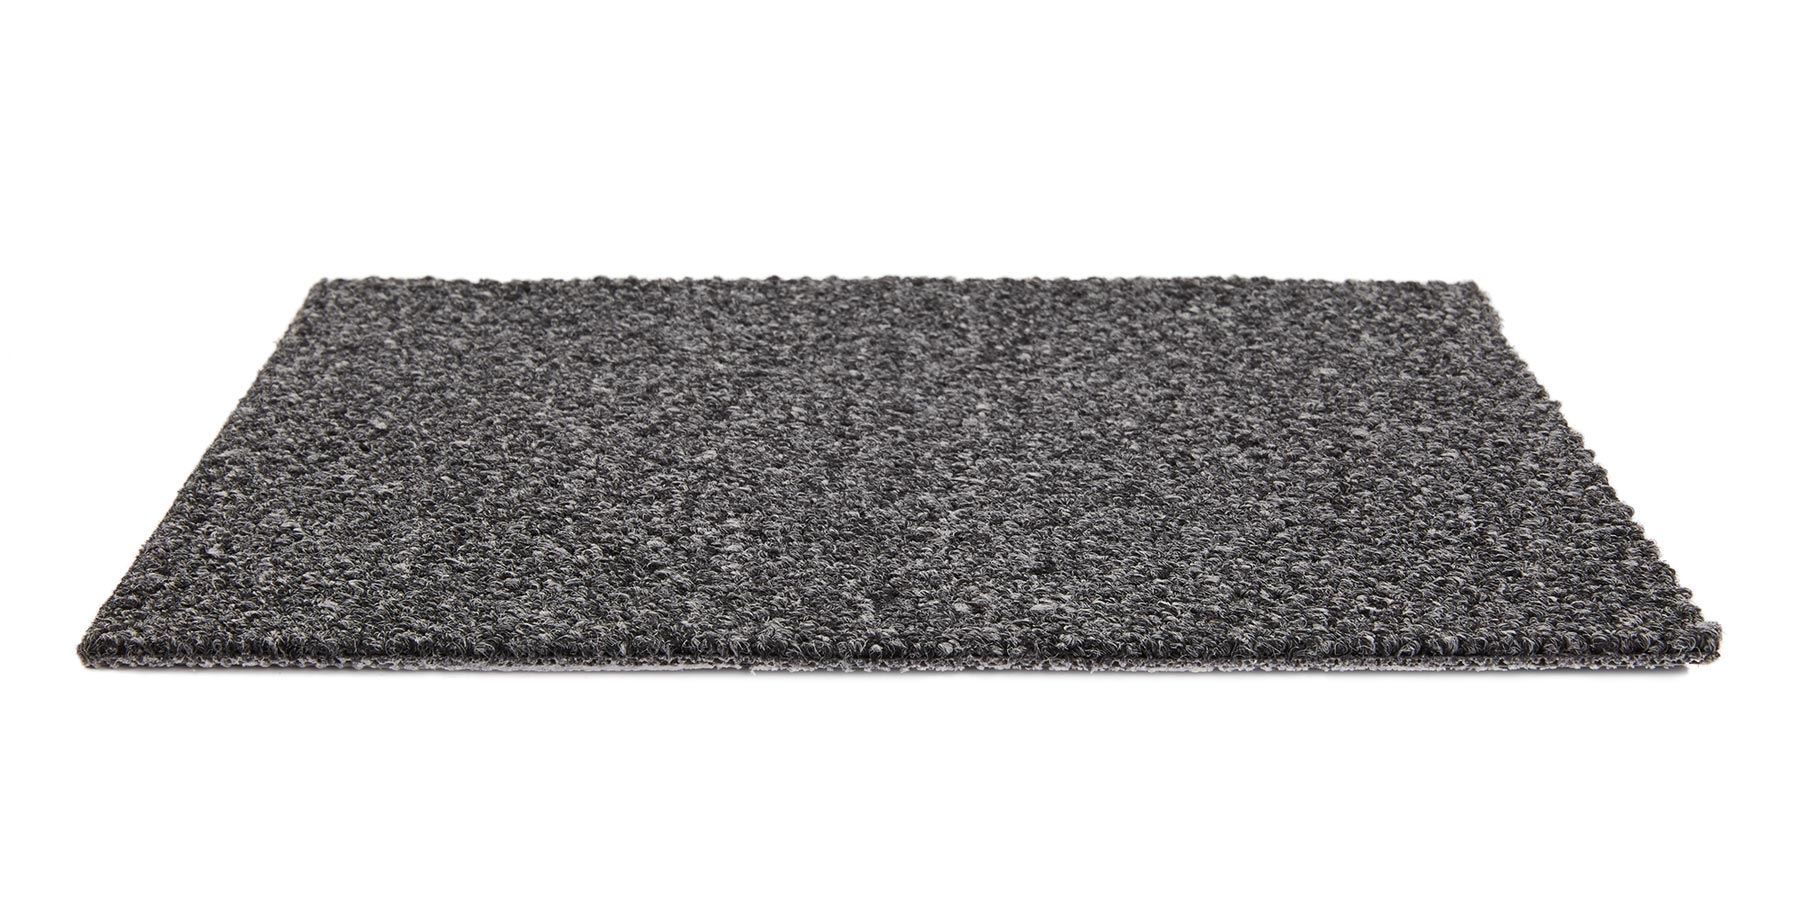 Tenbrooke II Black Sable Carpet